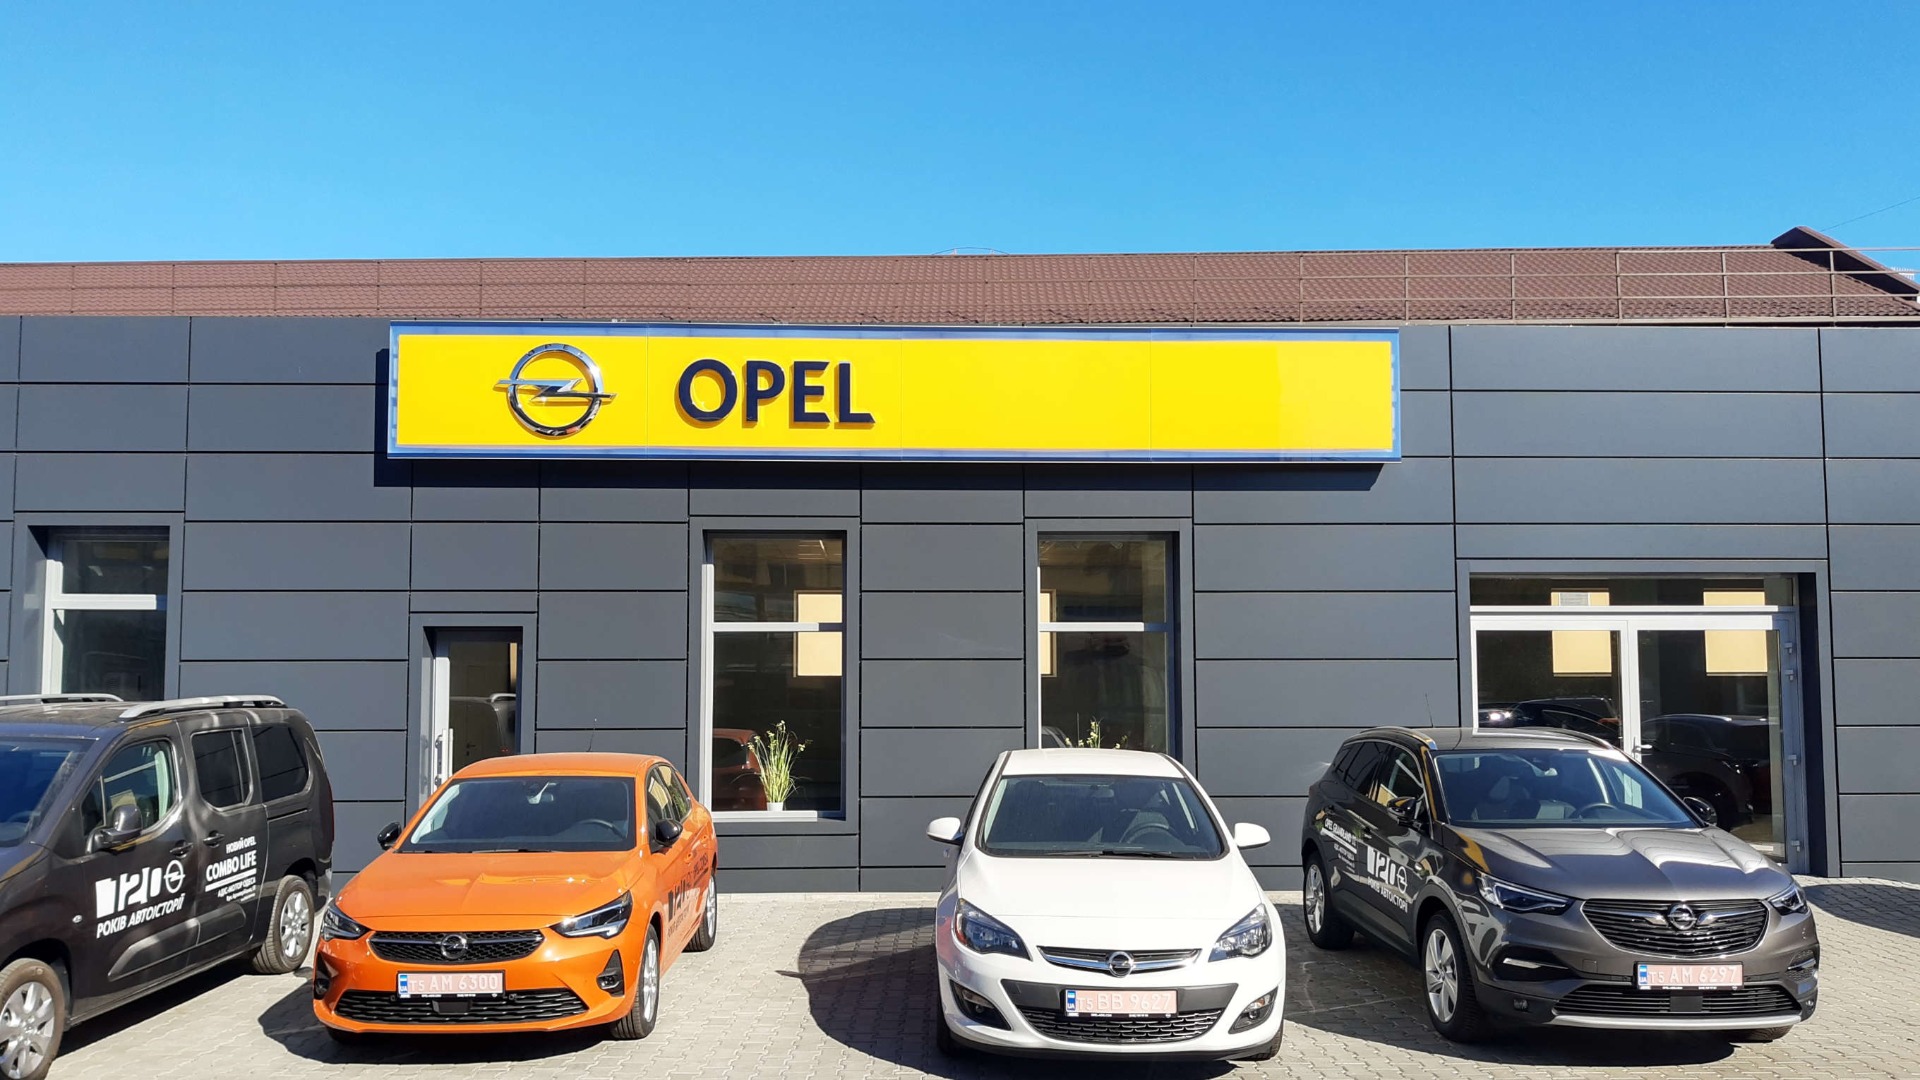 Opel германия. Дилерский центр Opel. Опель Украина. Опель центр на кубинской. Дилерский центр Opel внутри.